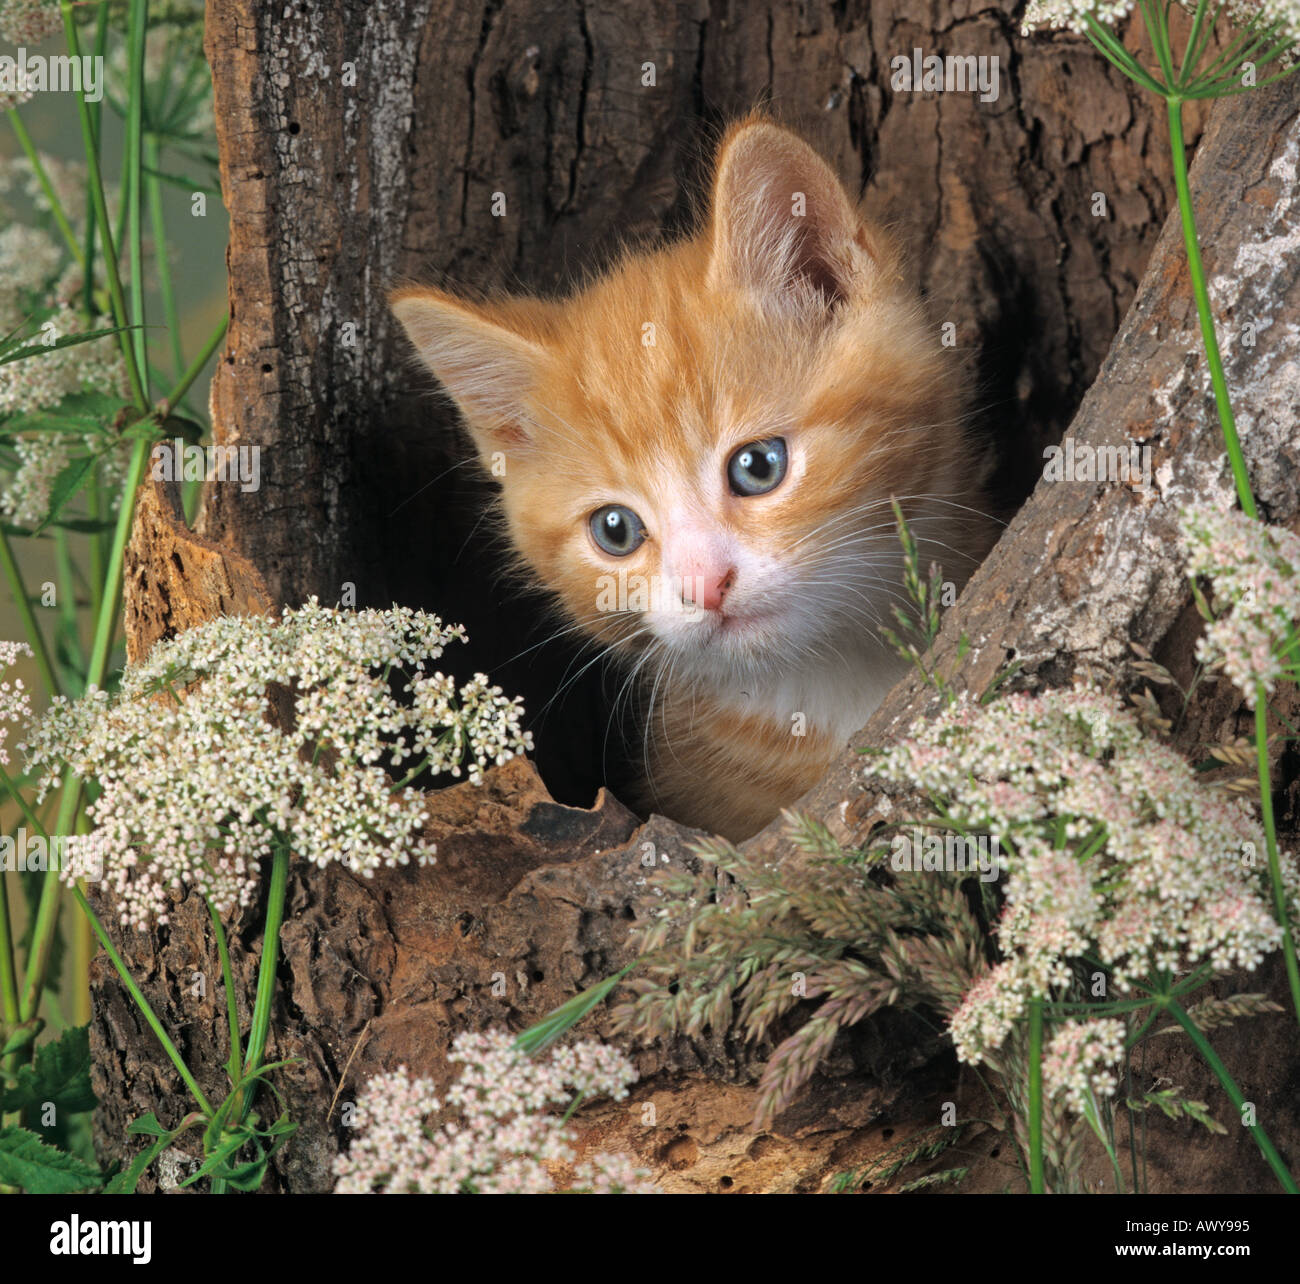 Ginger Kitten in hollow log Stock Photo